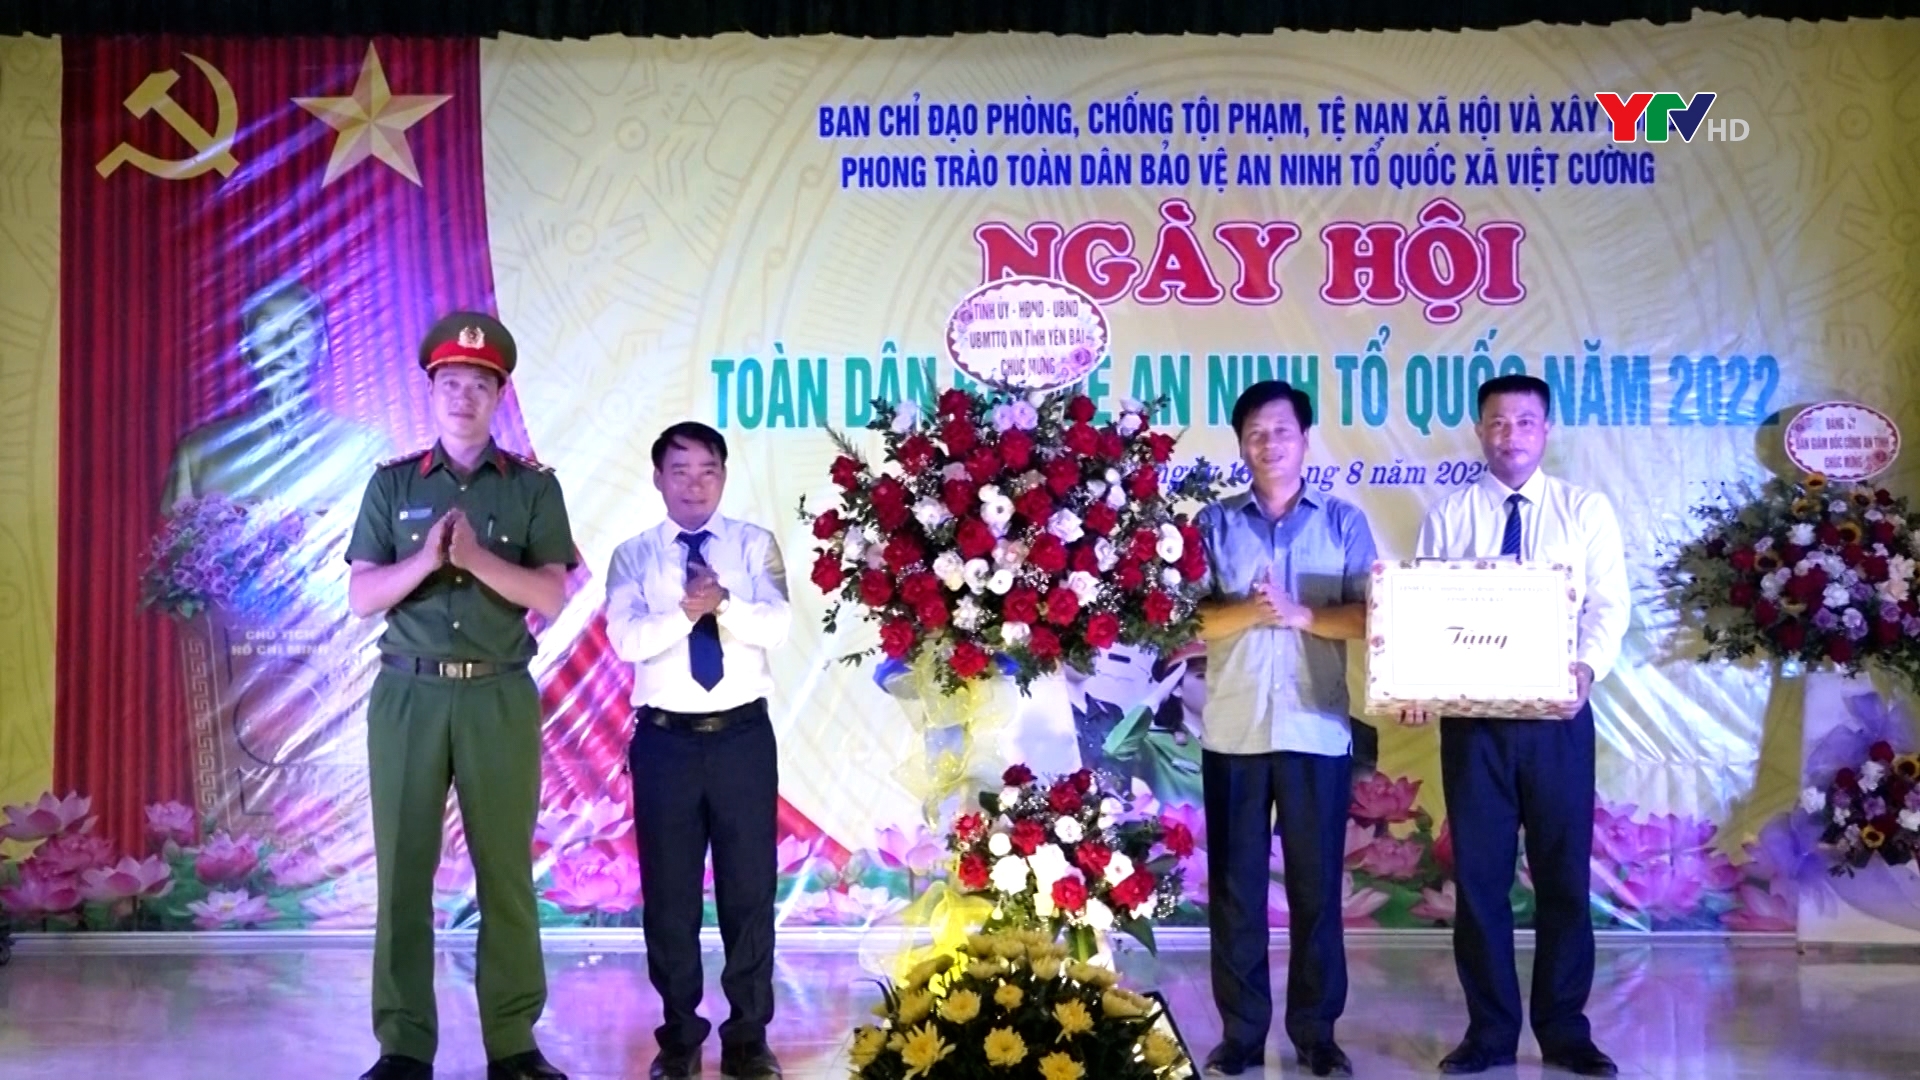 Ngày hội Toàn dân bảo vệ an ninh tổ quốc tại xã Việt Cường, huyện Trấn Yên